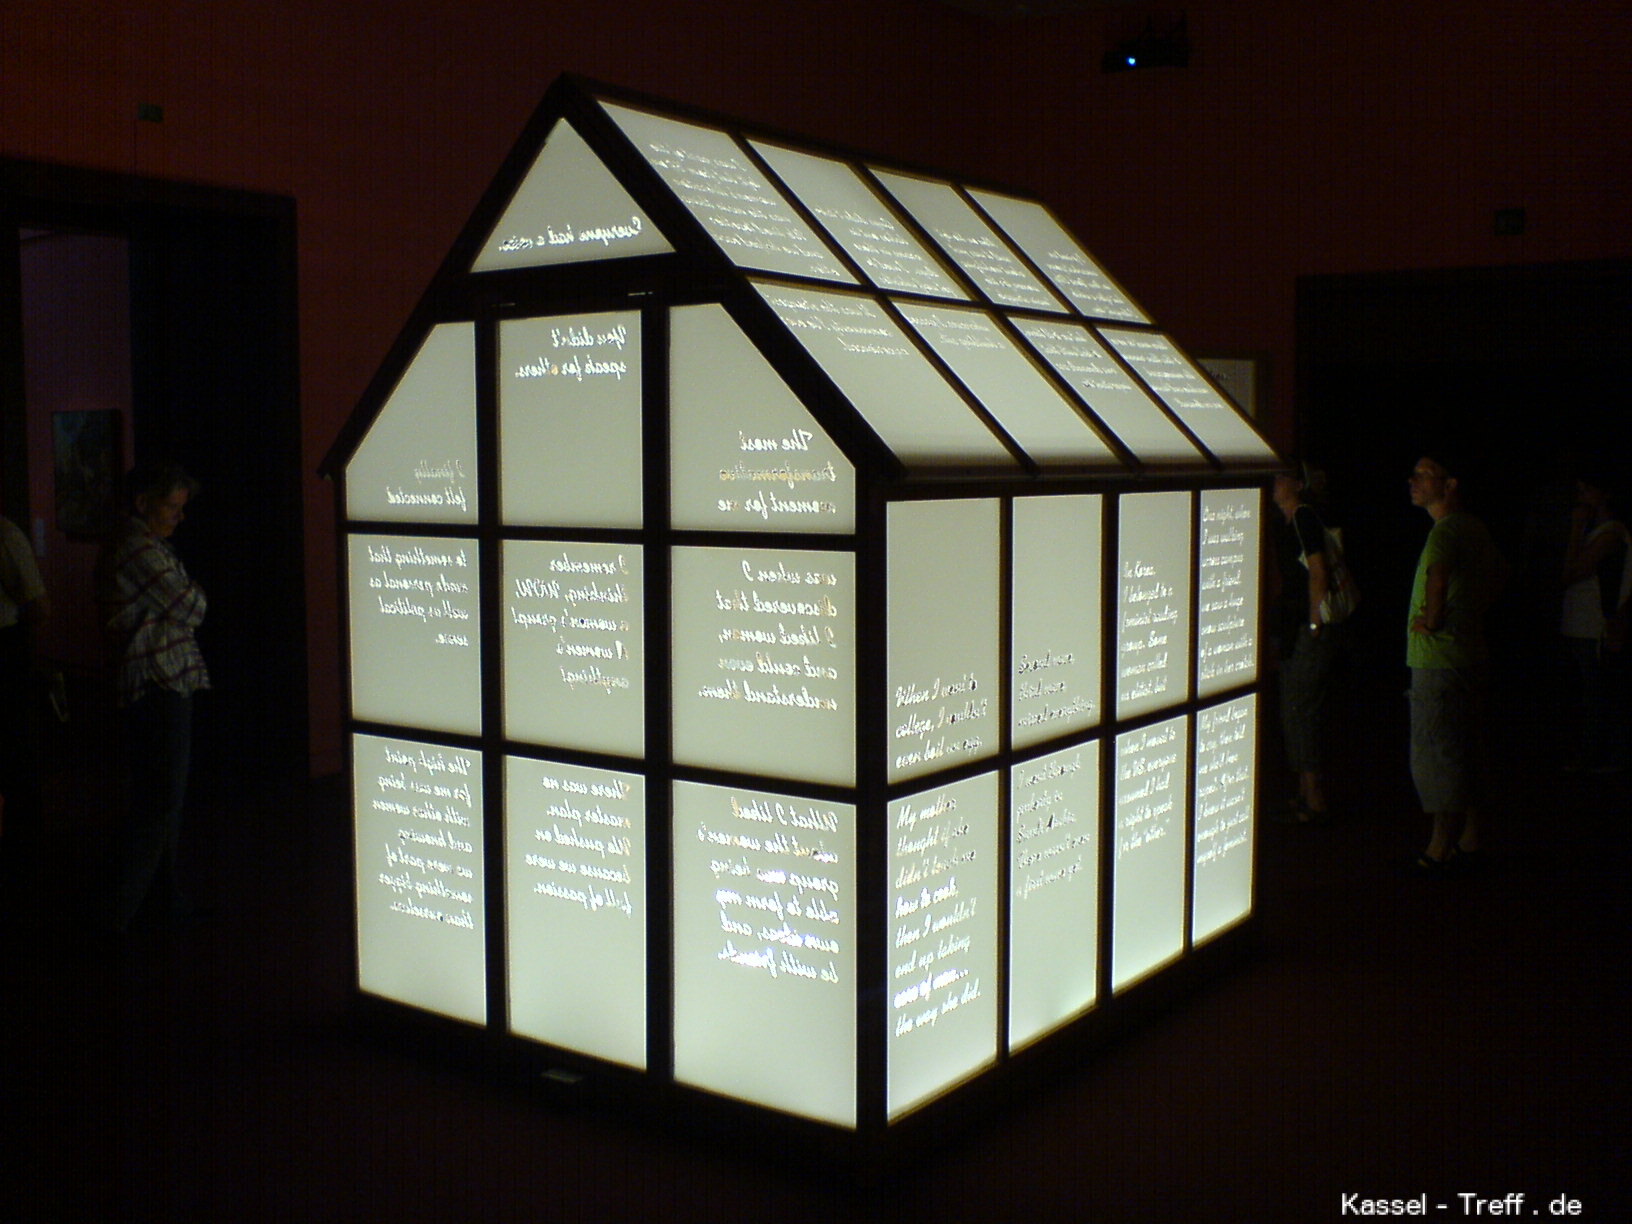 Leucht-Haus mit Schrift bei der documenta bei Neue Galerie